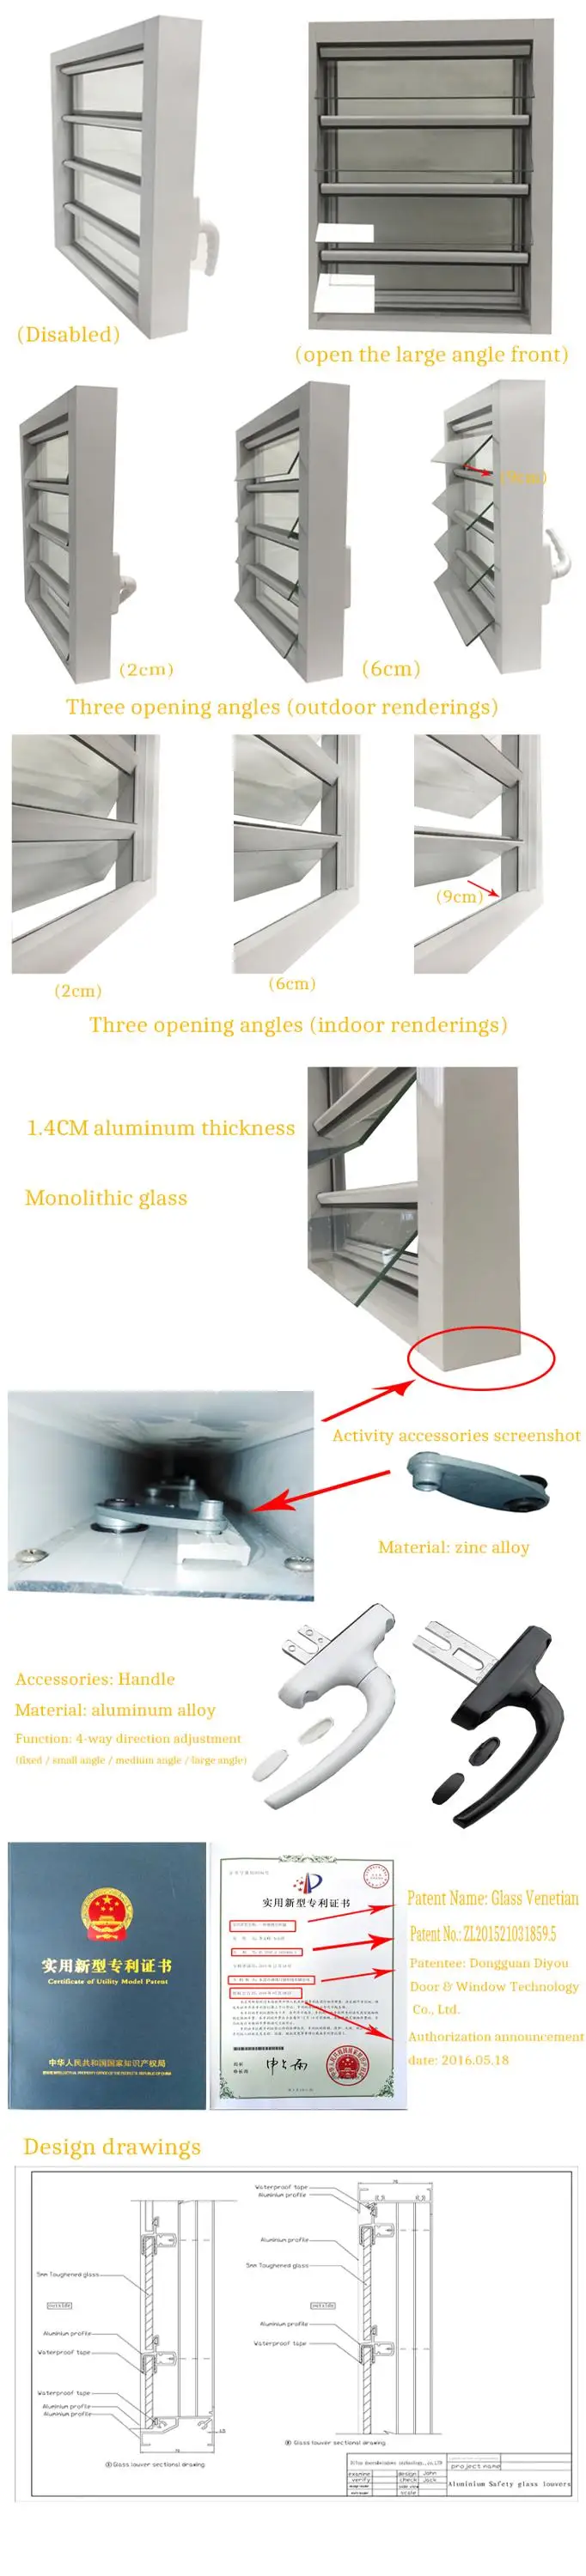 Aluminum Security Shutter Insulated Glass Louvre Windows Blinds